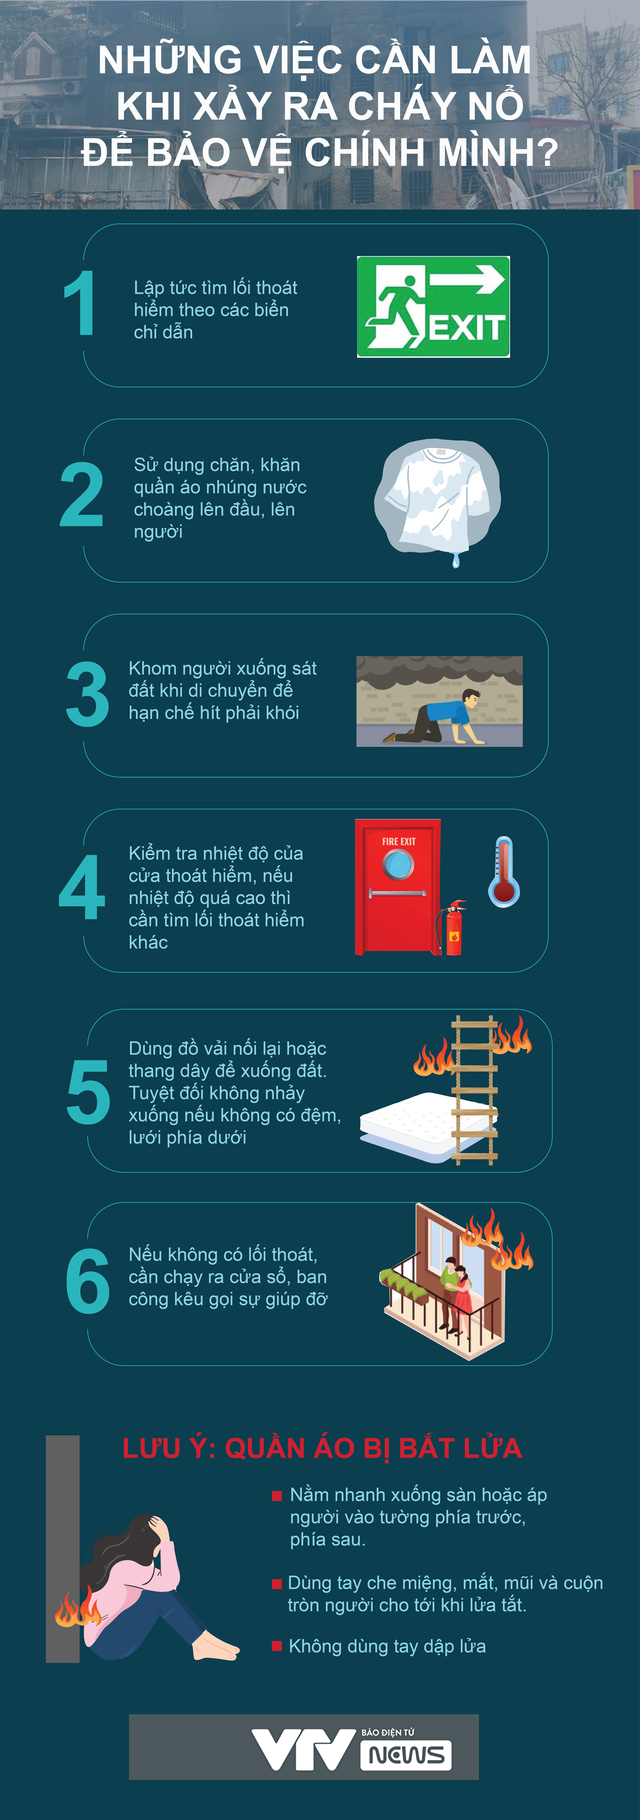 [Infographic] Những việc cần làm khi xảy ra cháy nổ để bảo vệ chính mình - Ảnh 1.